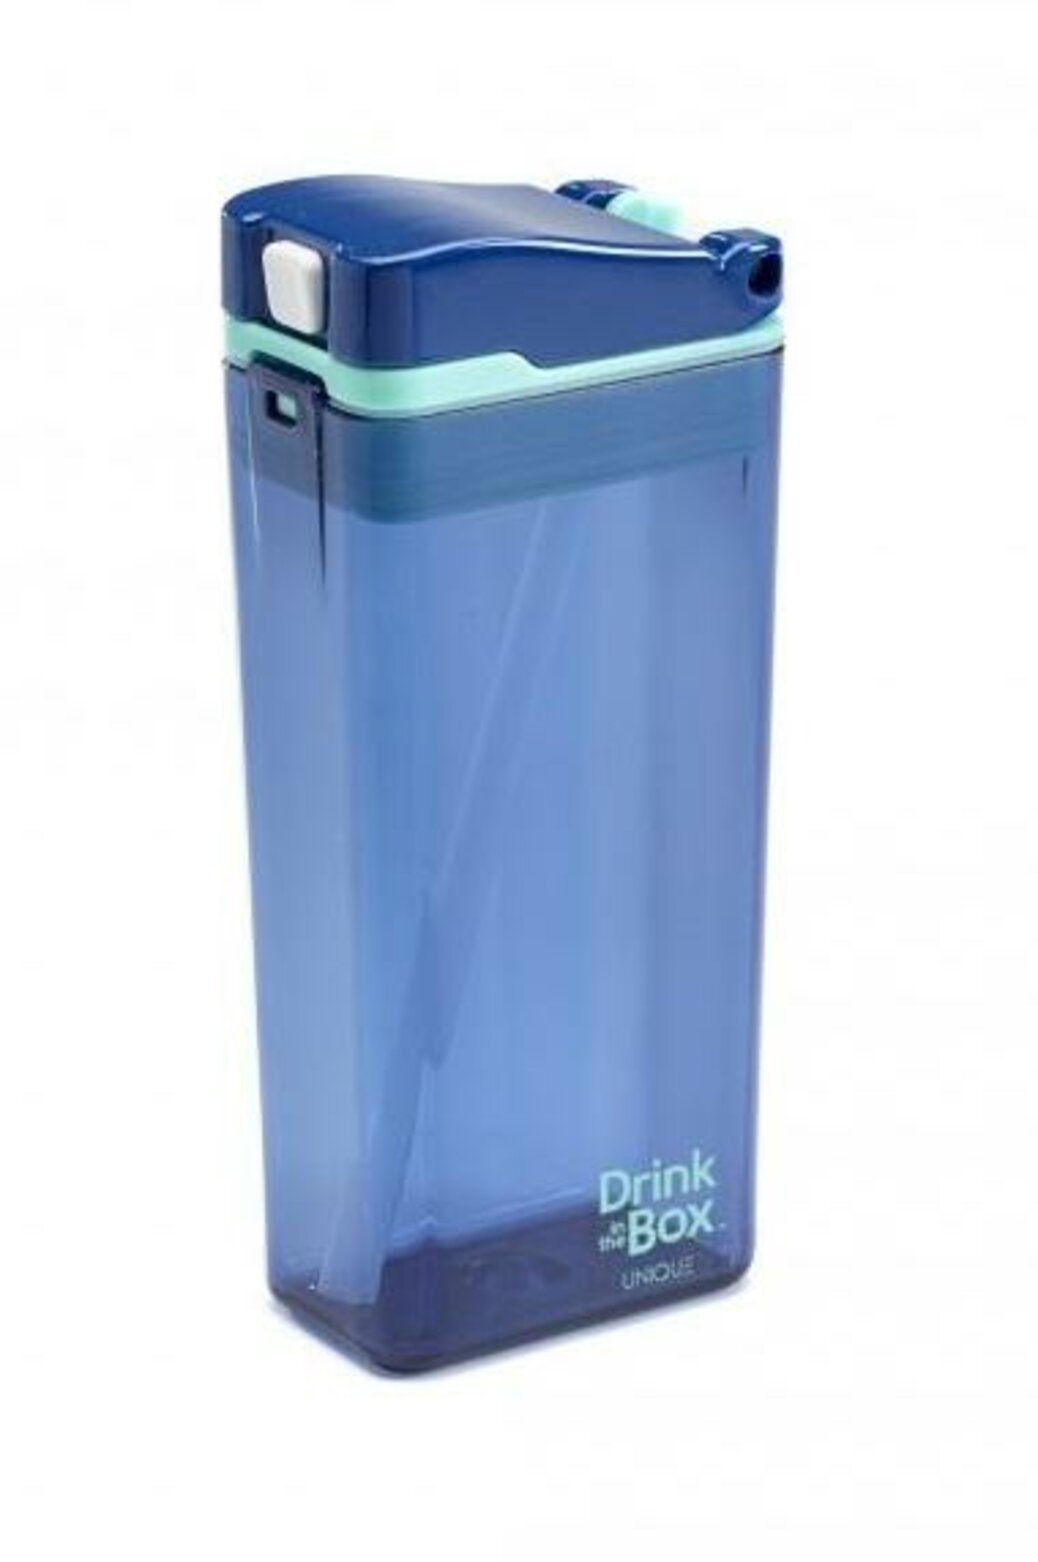 DRINK IN THE BOX Krabička nápojová 335 ml, modrá | Predeti.sk